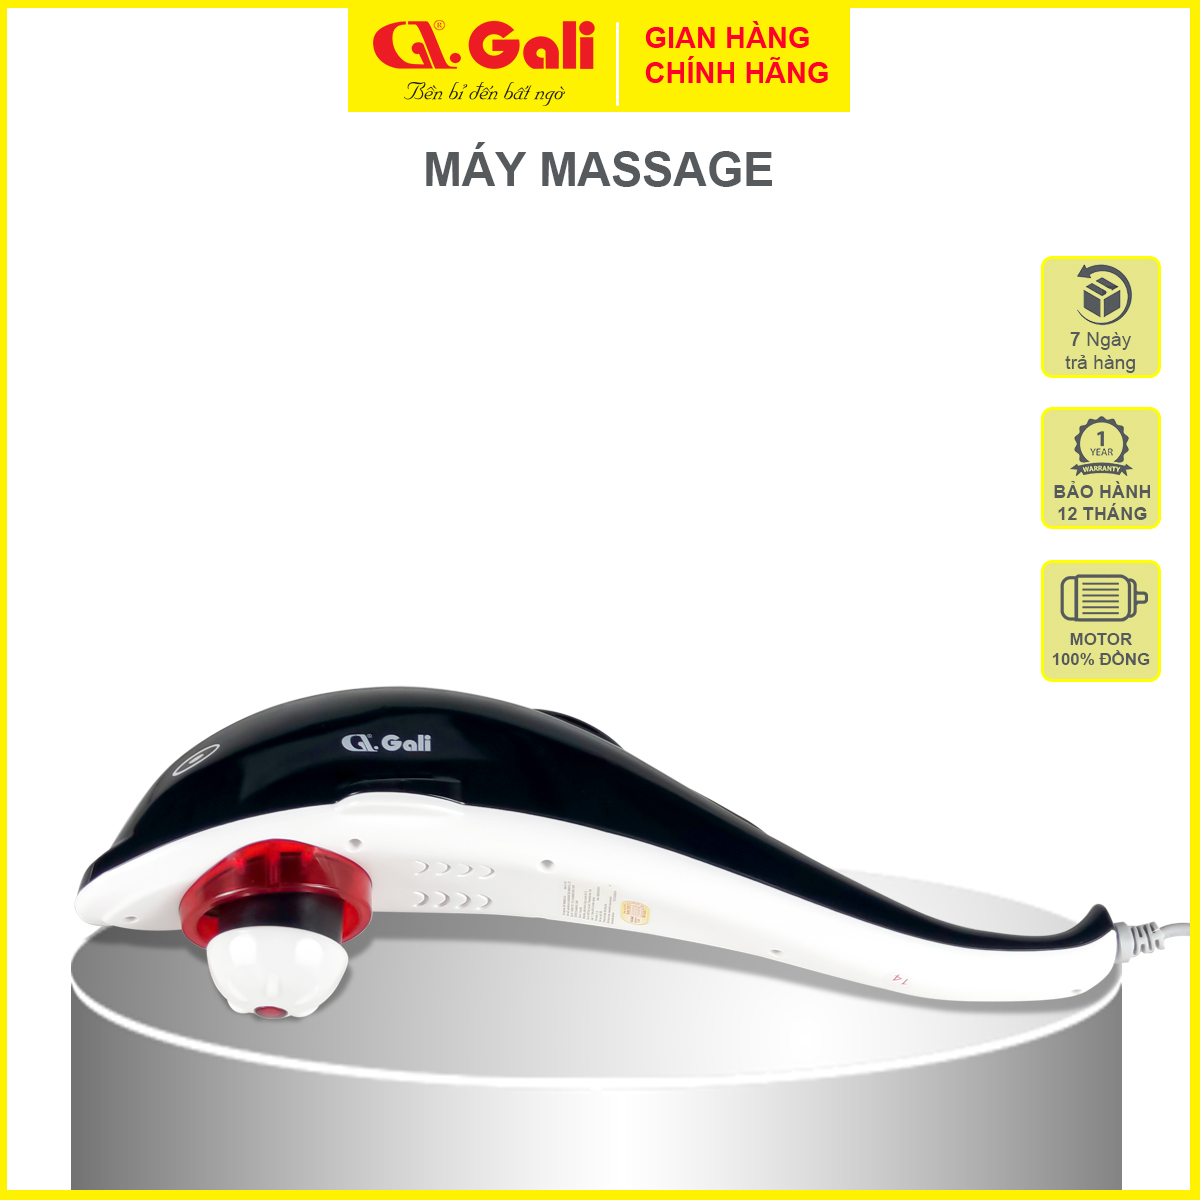 Máy massage thư giãn toàn thân Gali 20w, thiết kế cầm tay, tiện lợi, nhỏ gọn, sản phẩm chính hãng bảo hành 12 tháng